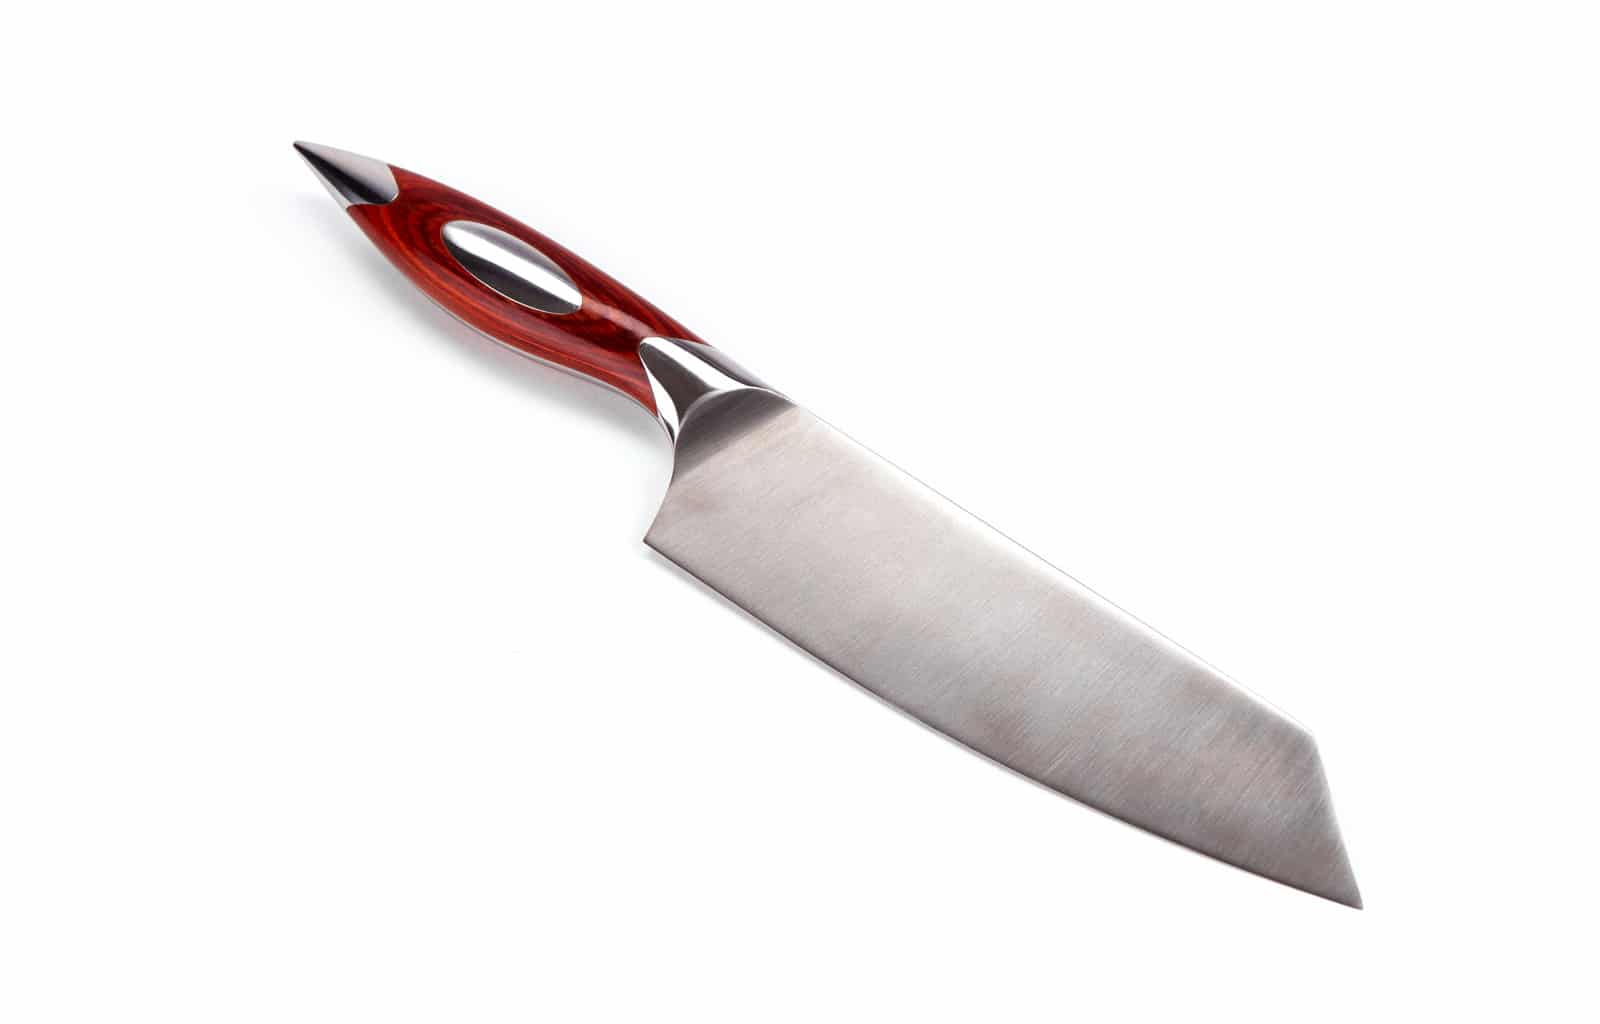 6″ Japanese Deba knife